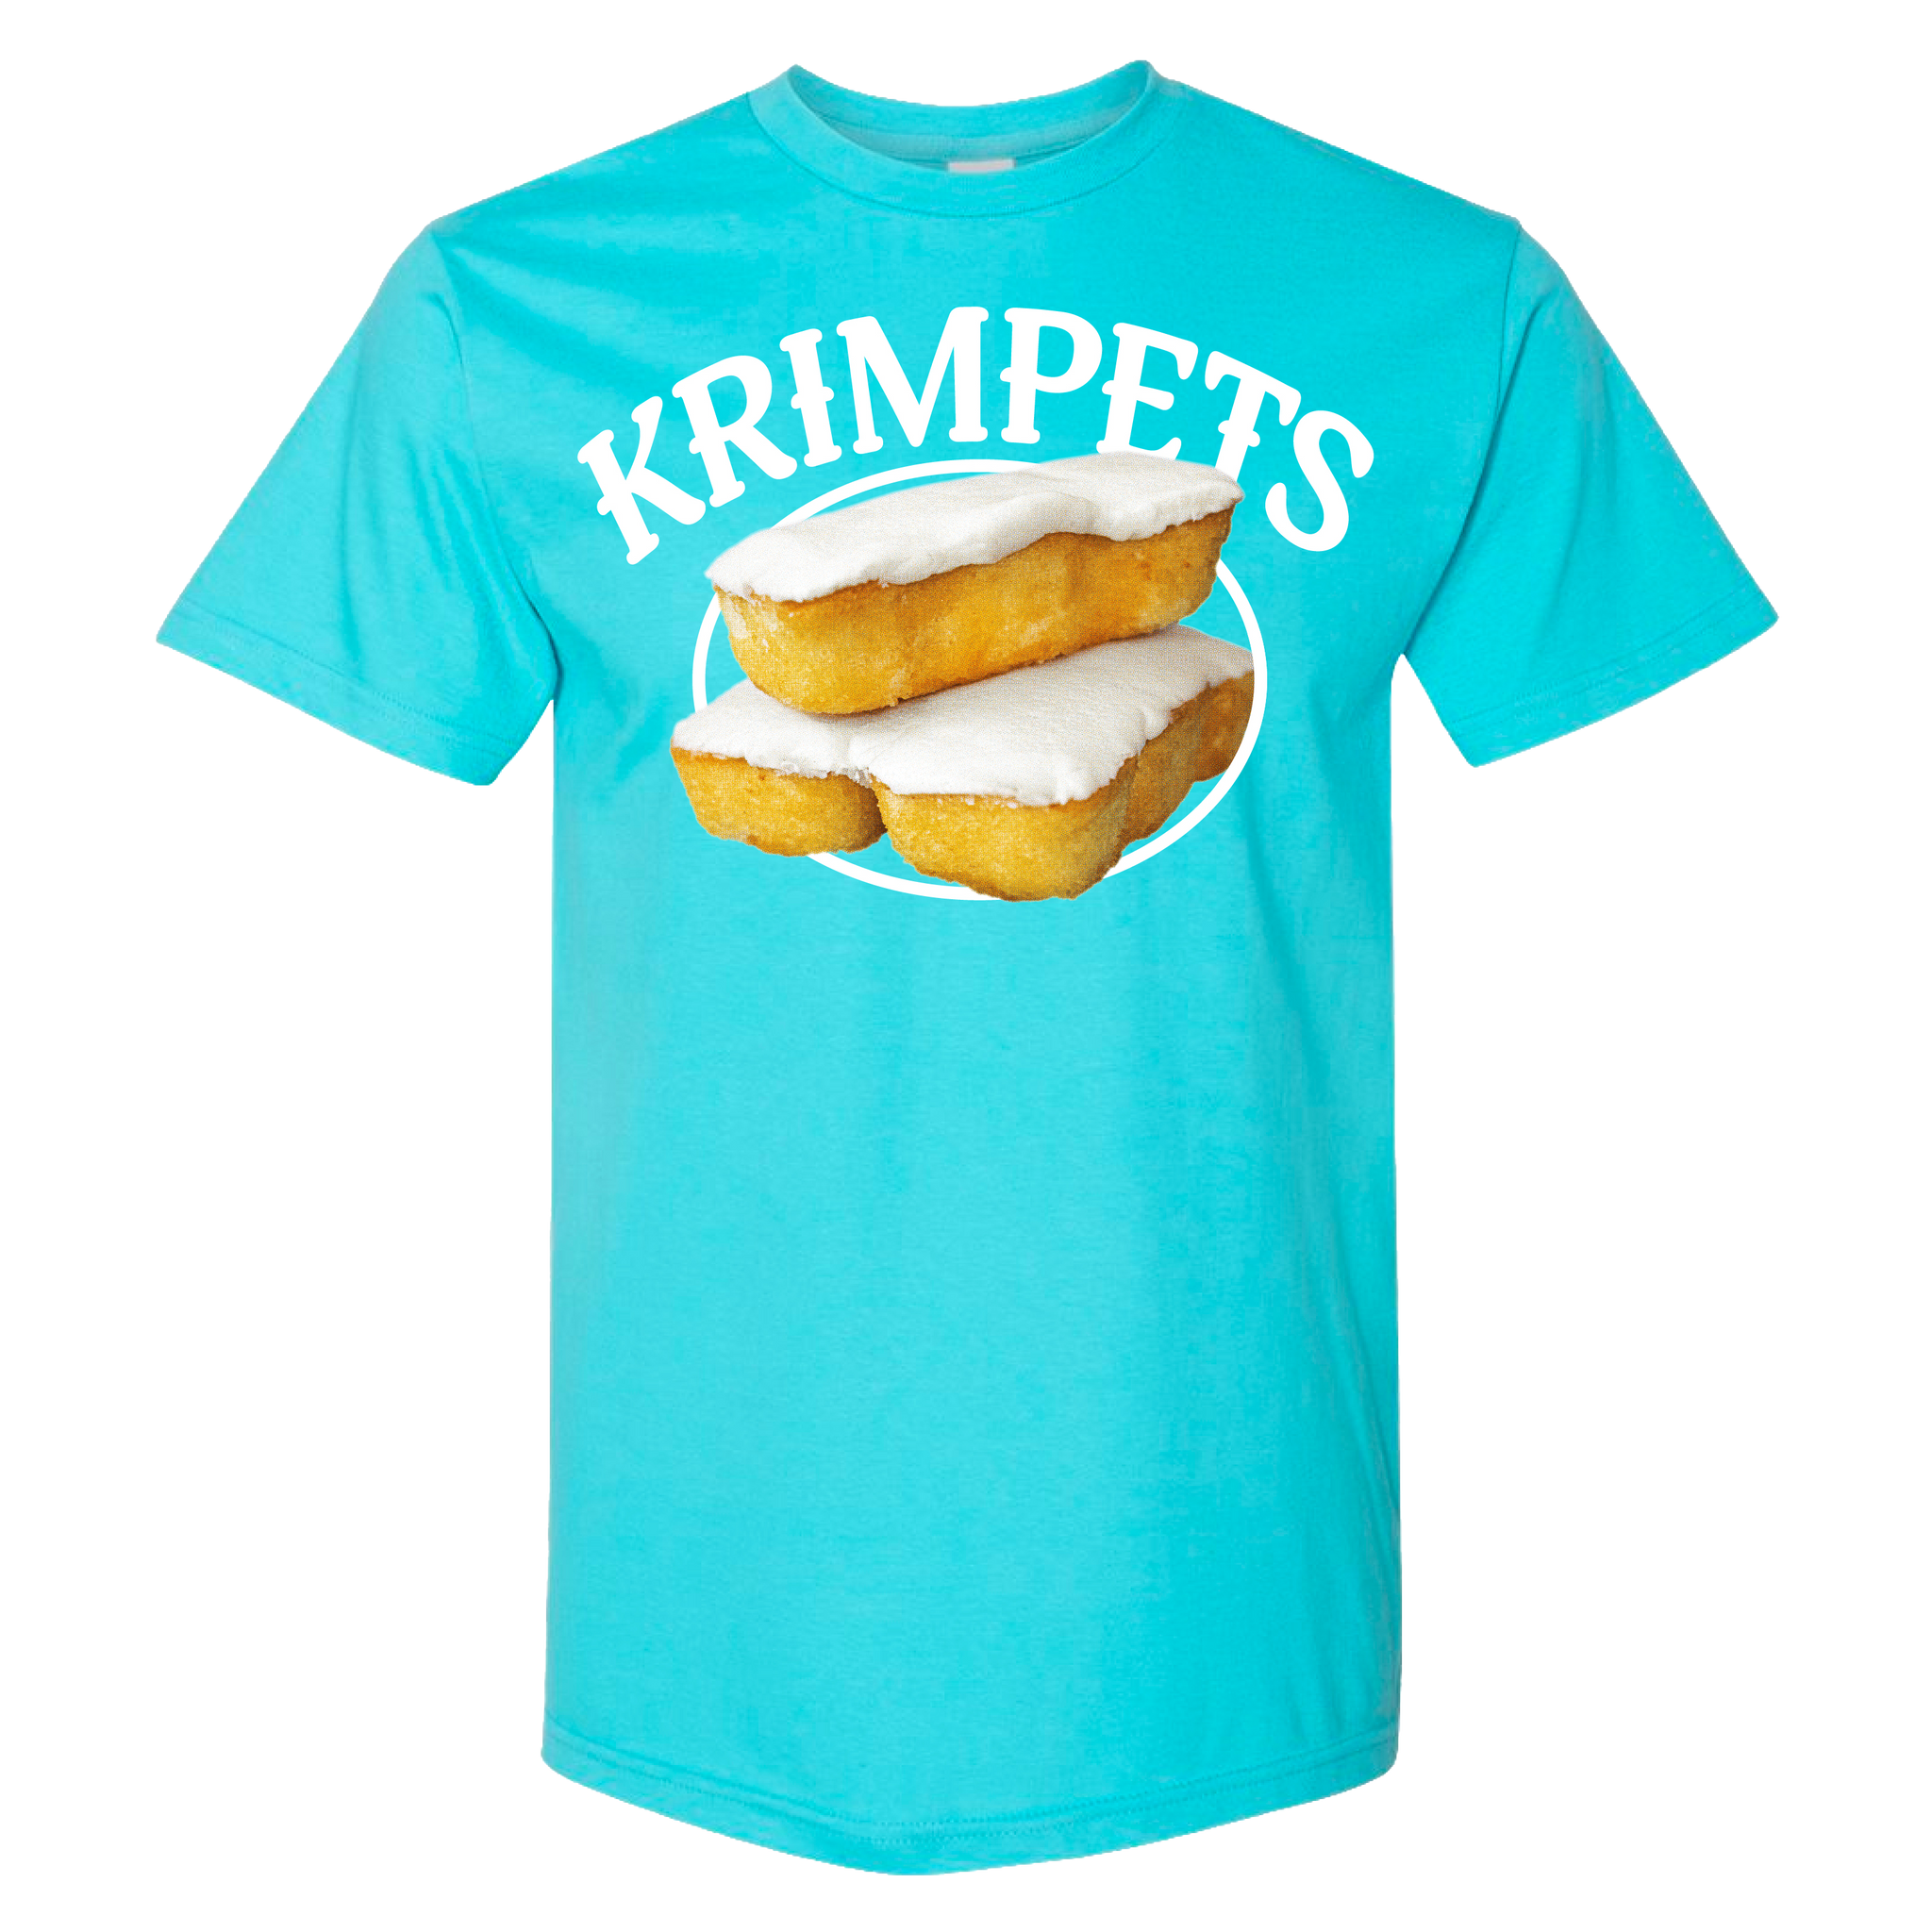 Krimpets T-Shirt